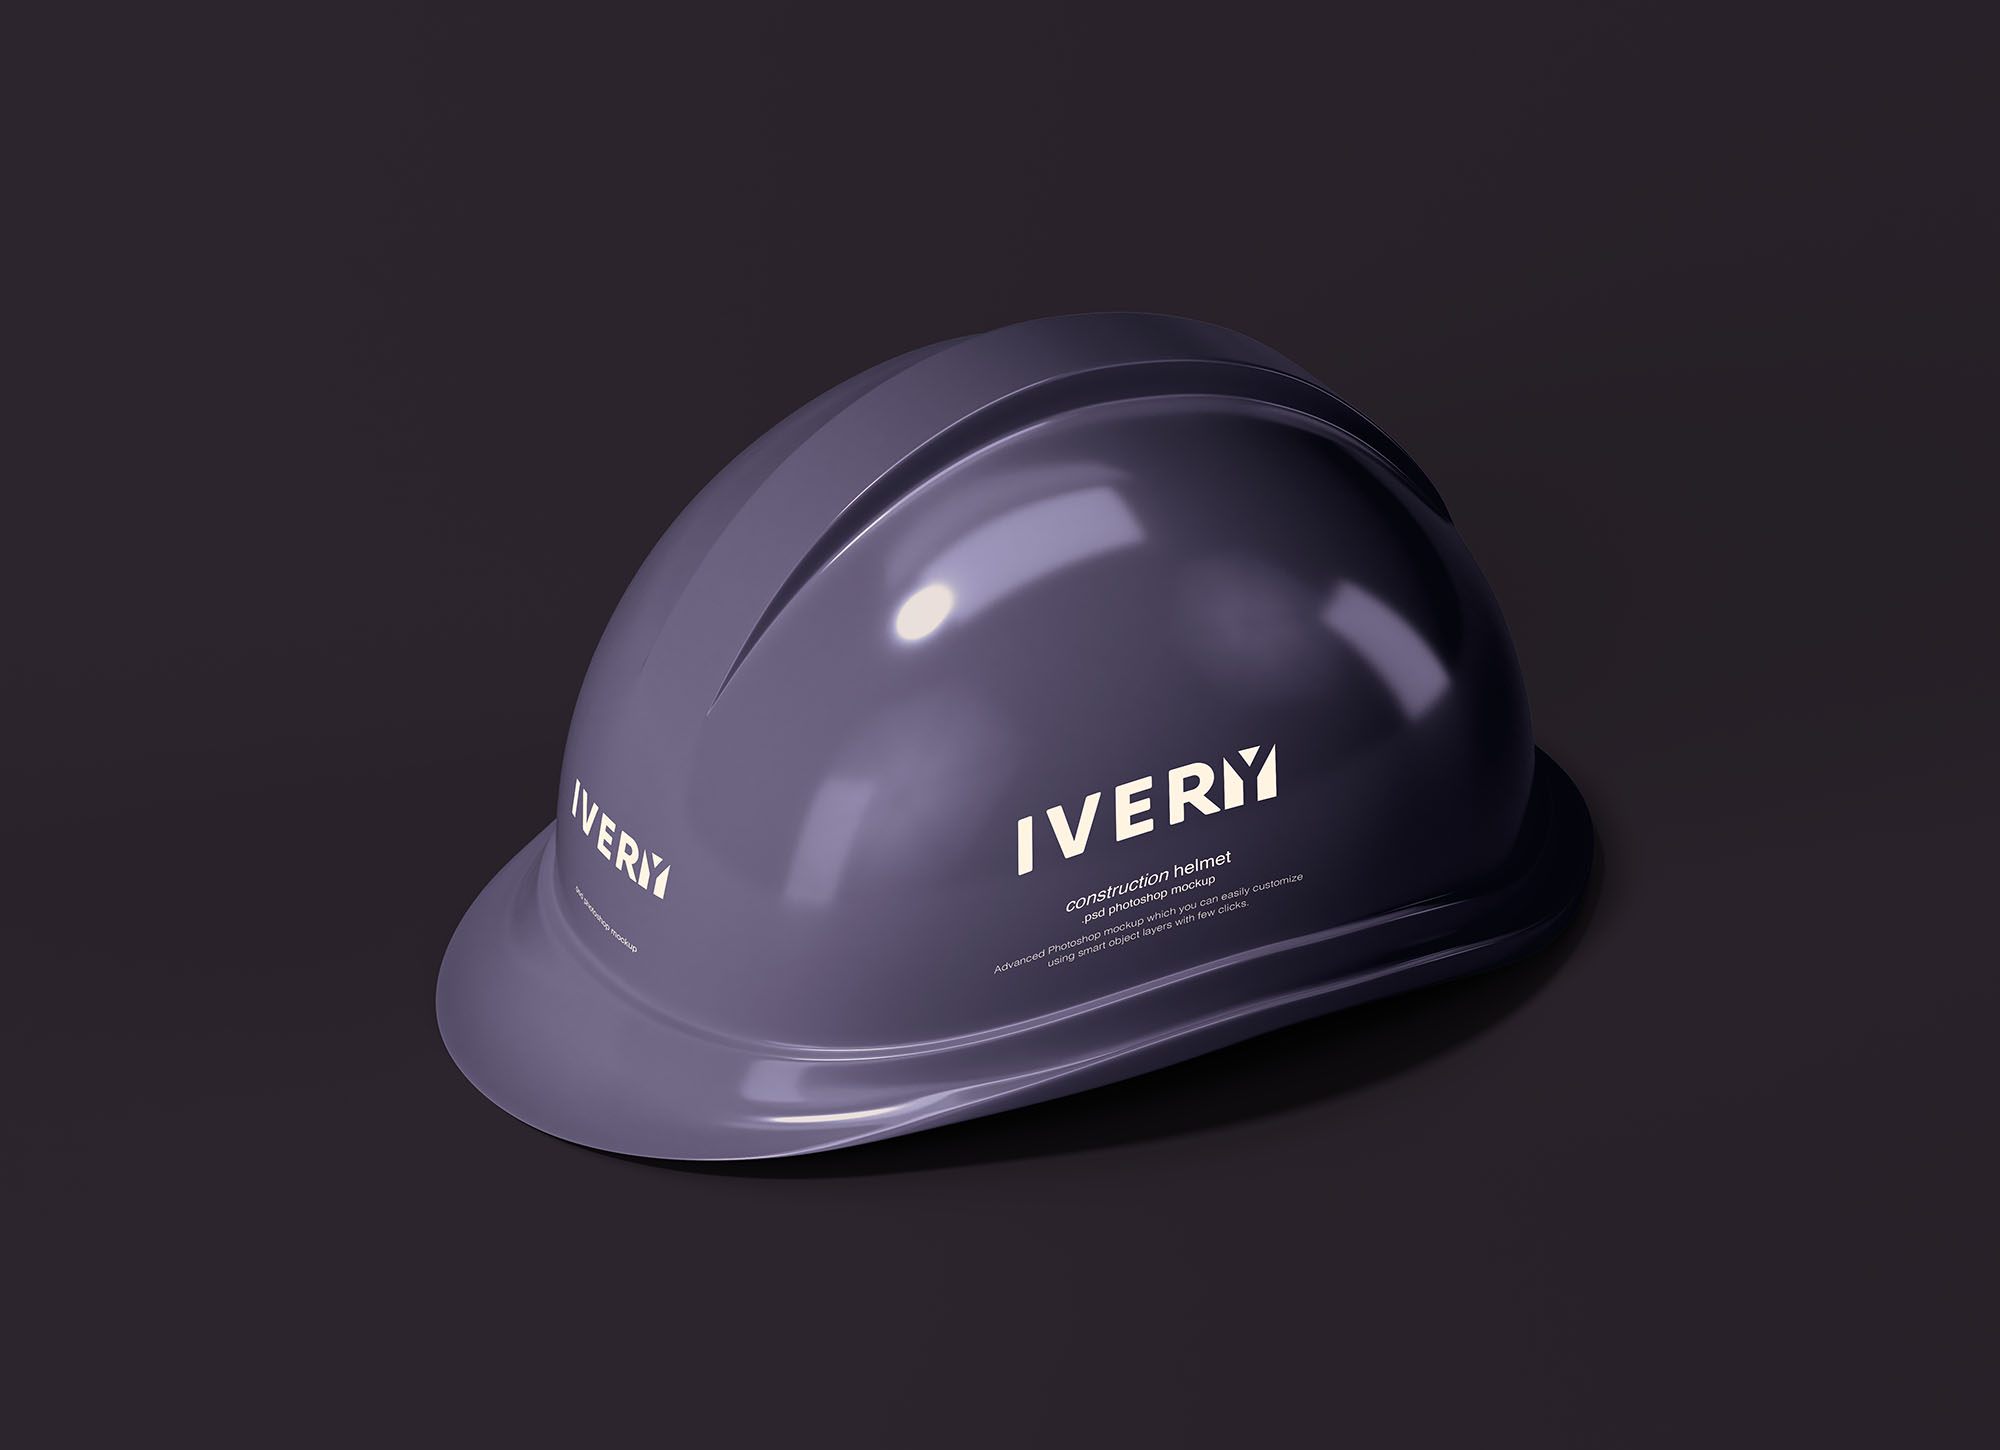 建筑头盔/工作头盔外观设计展示第一素材精选模板 Construction Helmet Mockup插图(1)